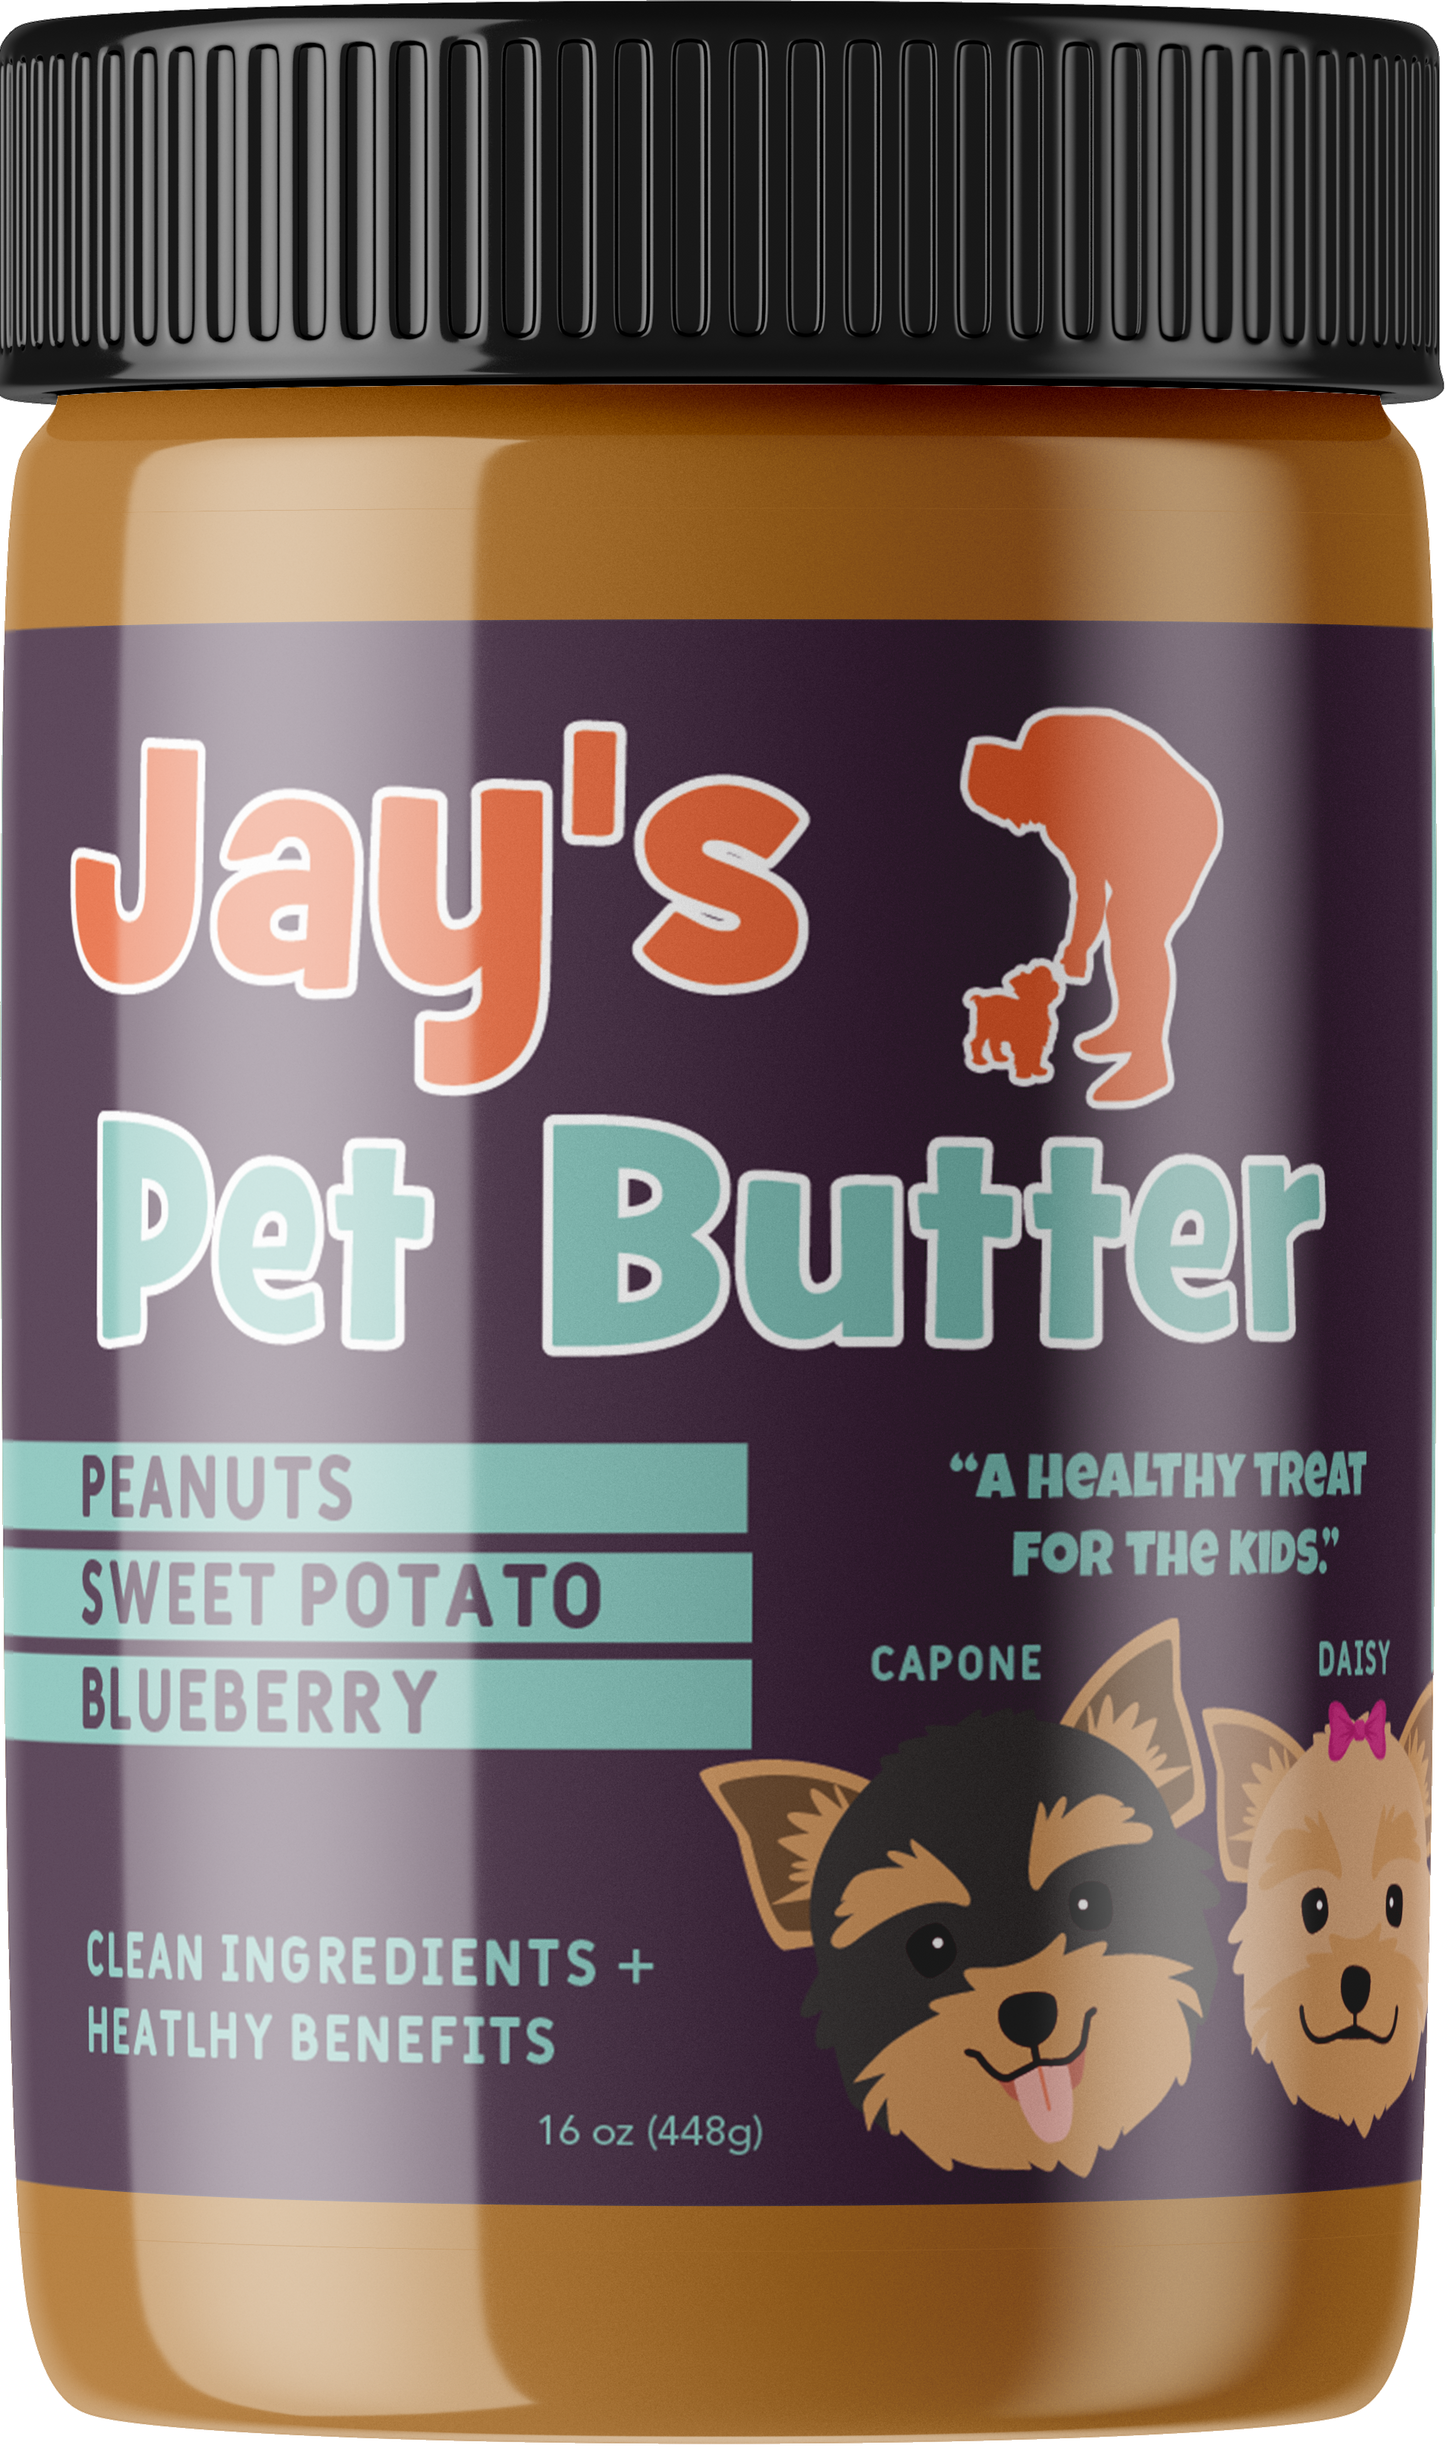 Jay's Pet Butter